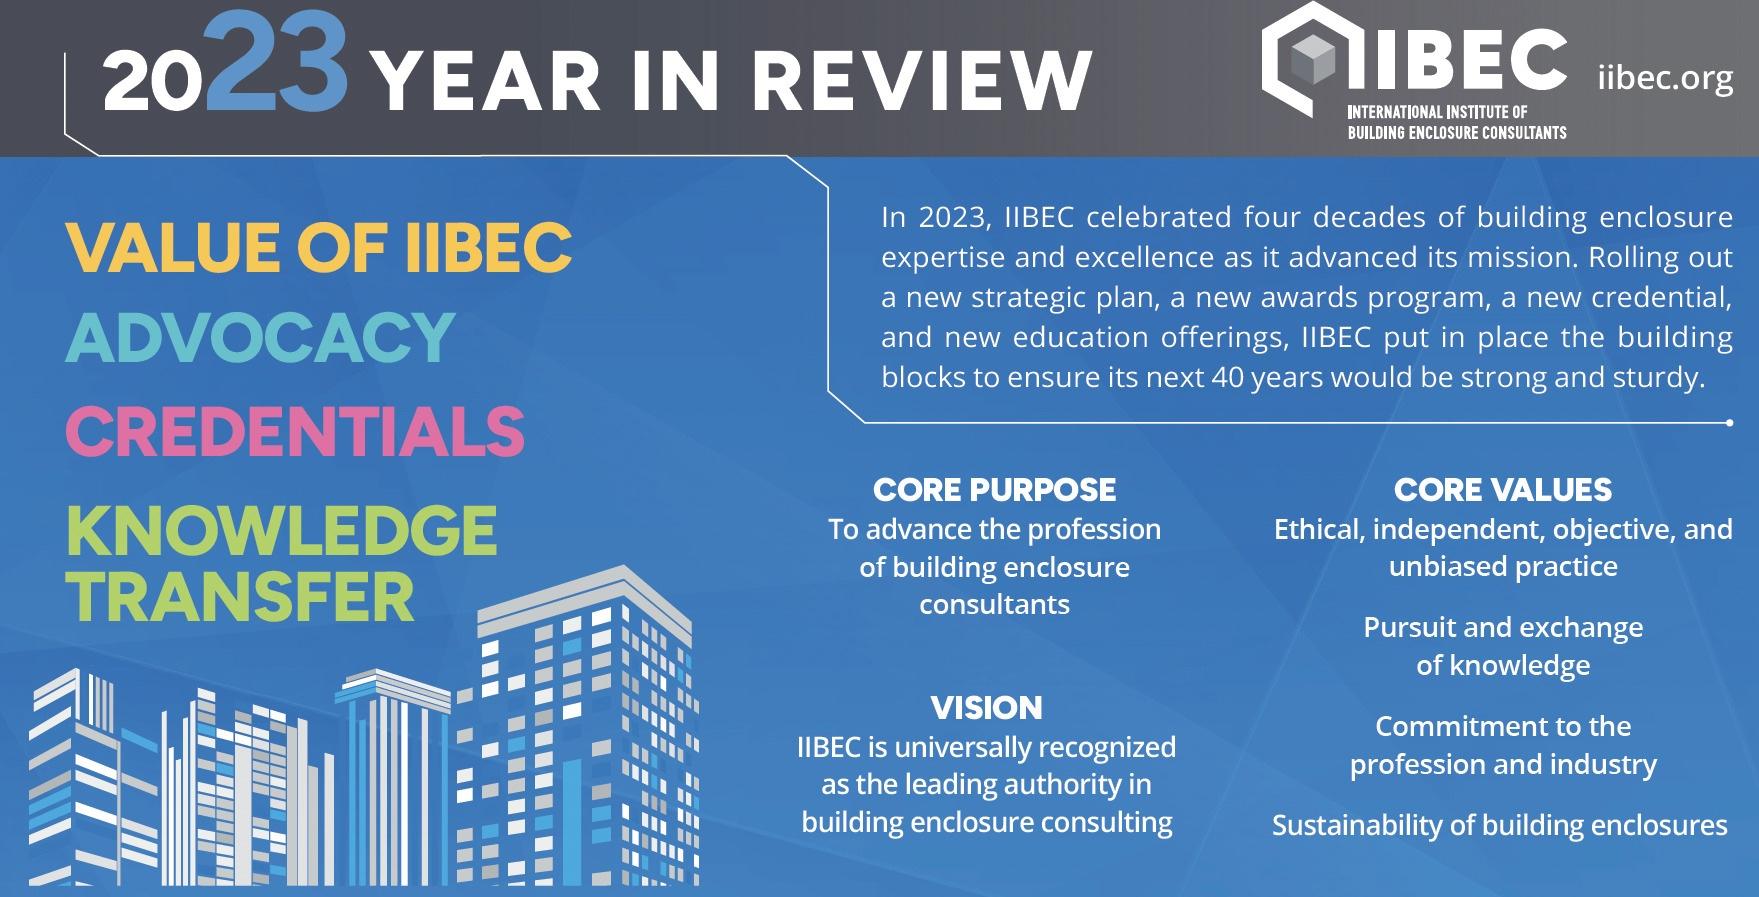 IIBEC 2023 in review